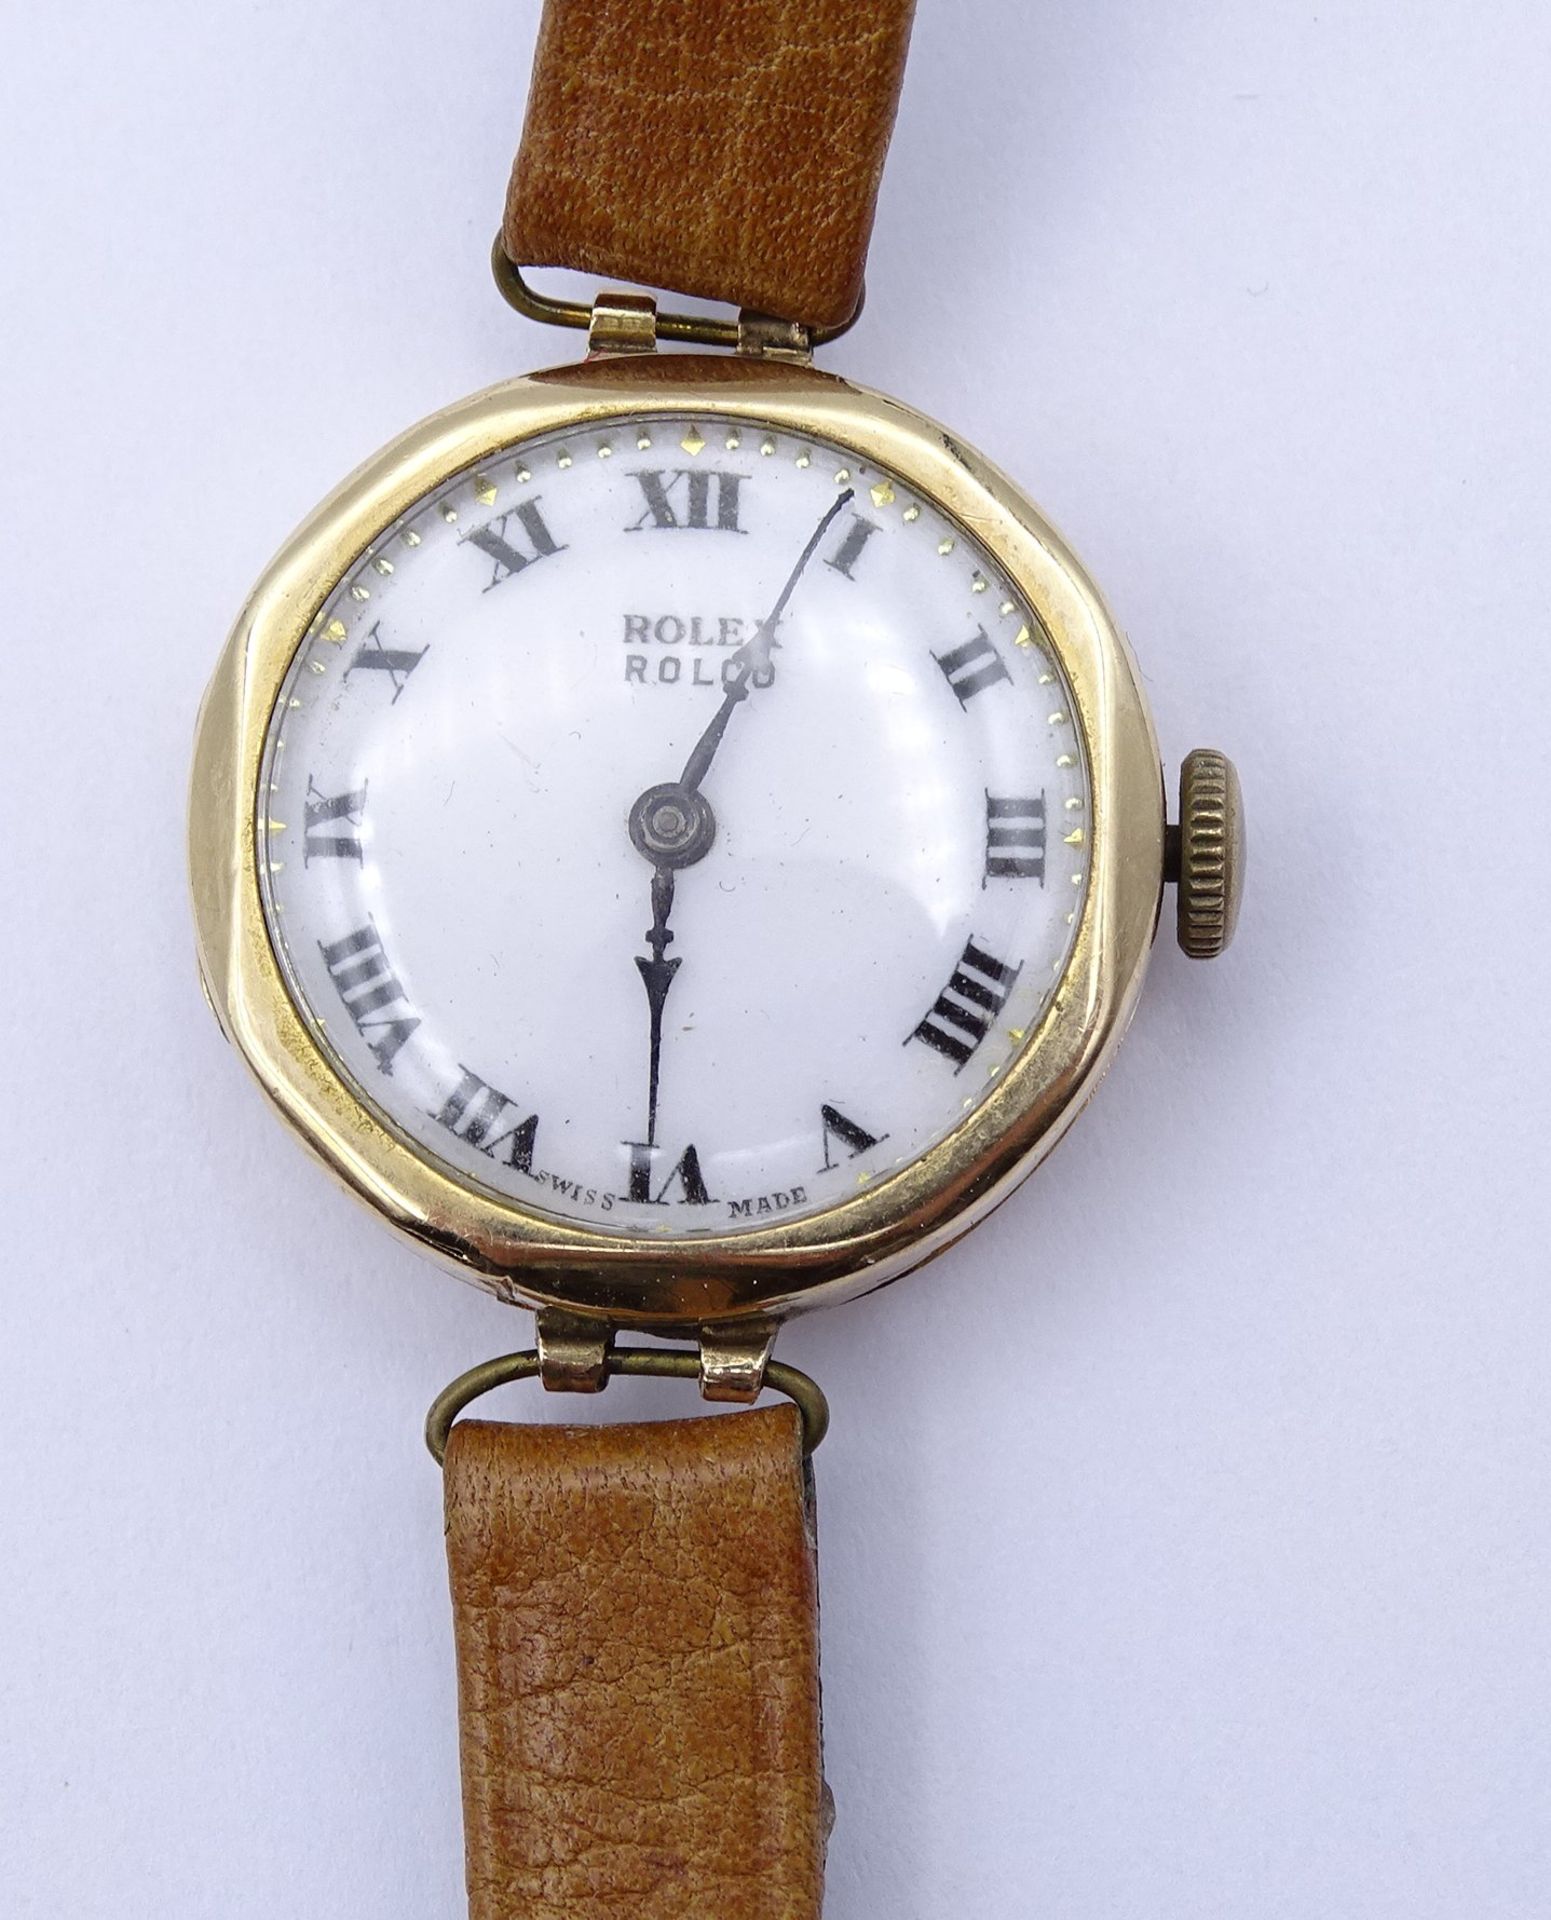 Armbanduhr "Rolex" Mod. Rolco, GG Gehäuse 375/000, mechanisch, Werk läuft für einige Minuten, D. 25